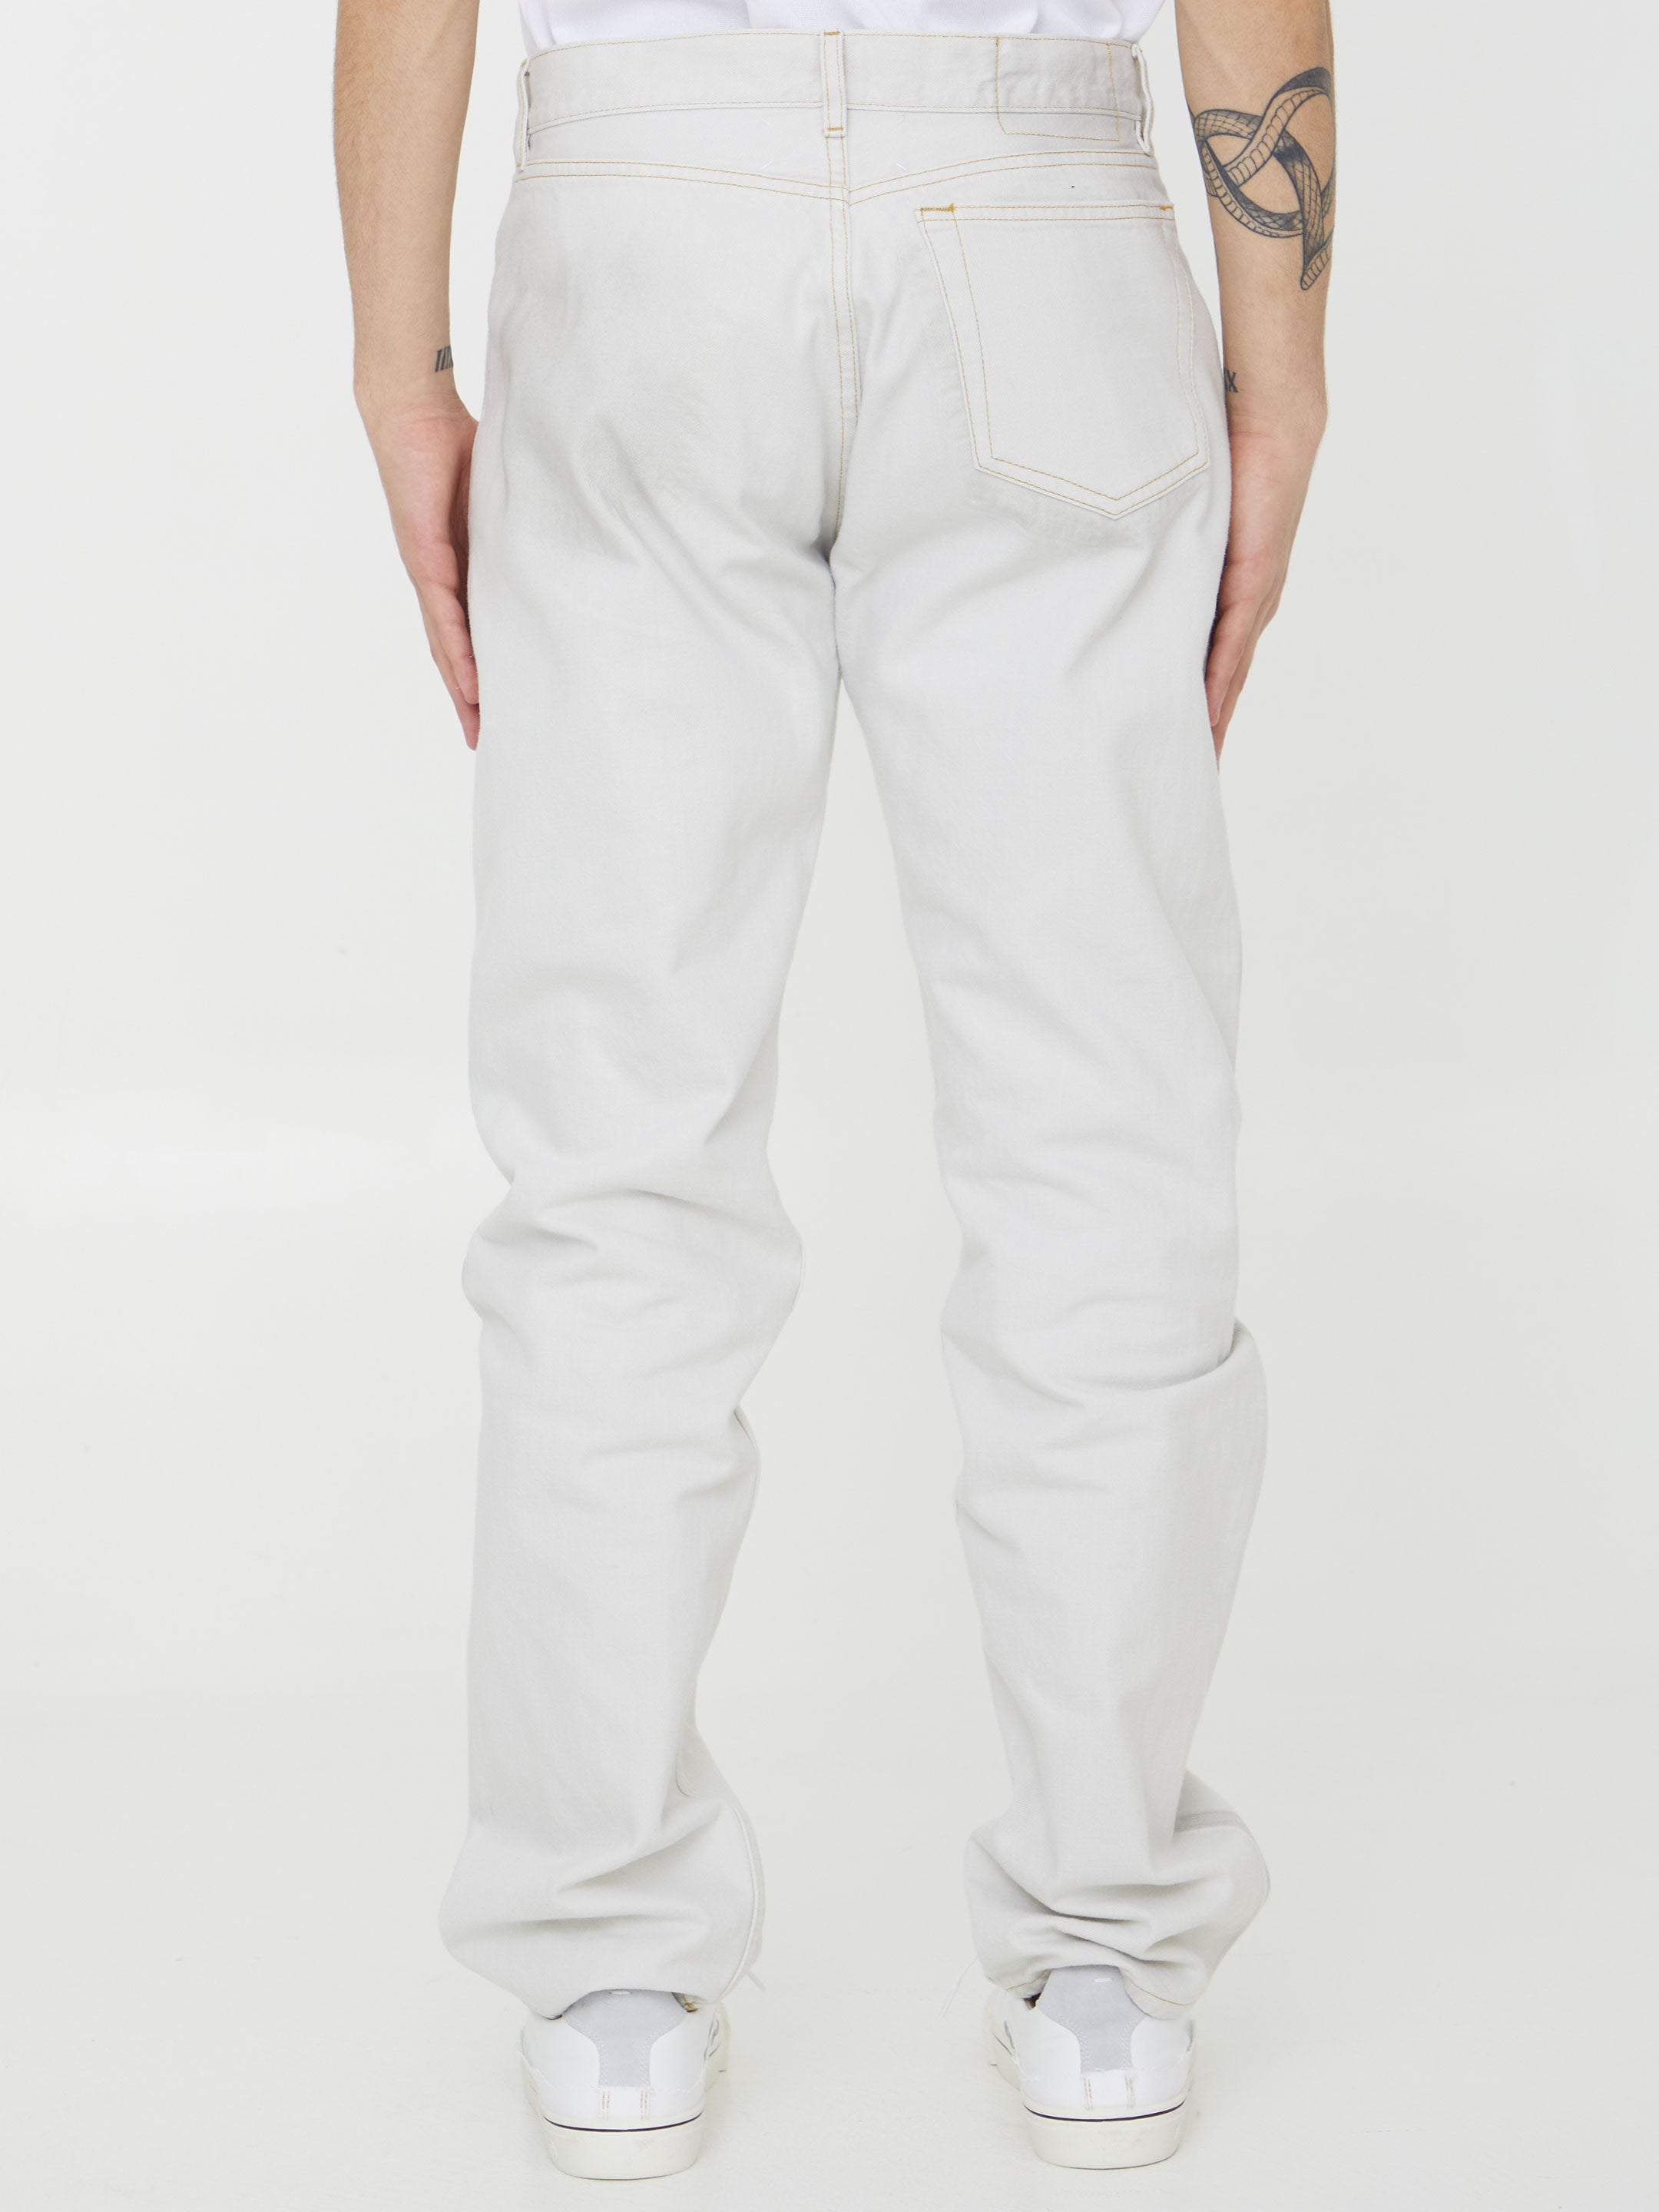 MAISON-MARGIELA-OUTLET-SALE-Cotton-denim-jeans-Jeans-34-WHITE-ARCHIVE-COLLECTION-4.jpg